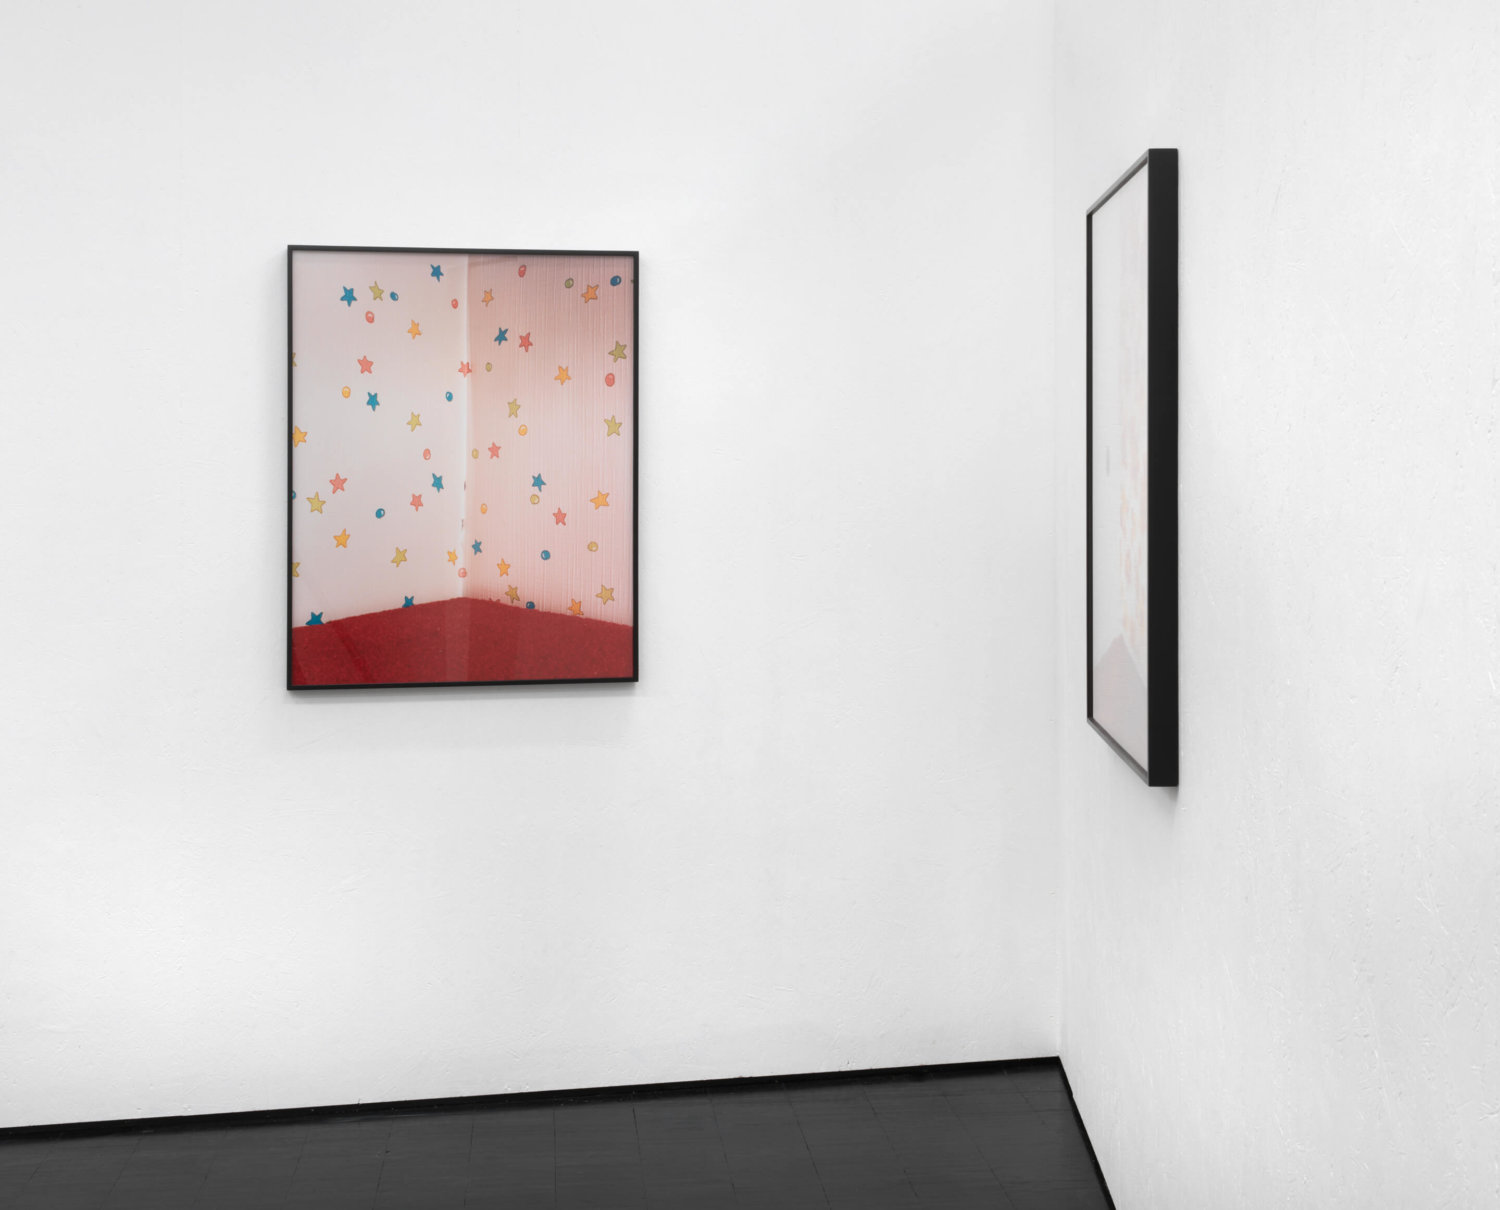 Zwei Fotografien an weißen Ausstellungswänden, frontal zu sehen ist ein Foto von einer Raumecke mit einer Sternen-Tapete und rotem Teppichboden